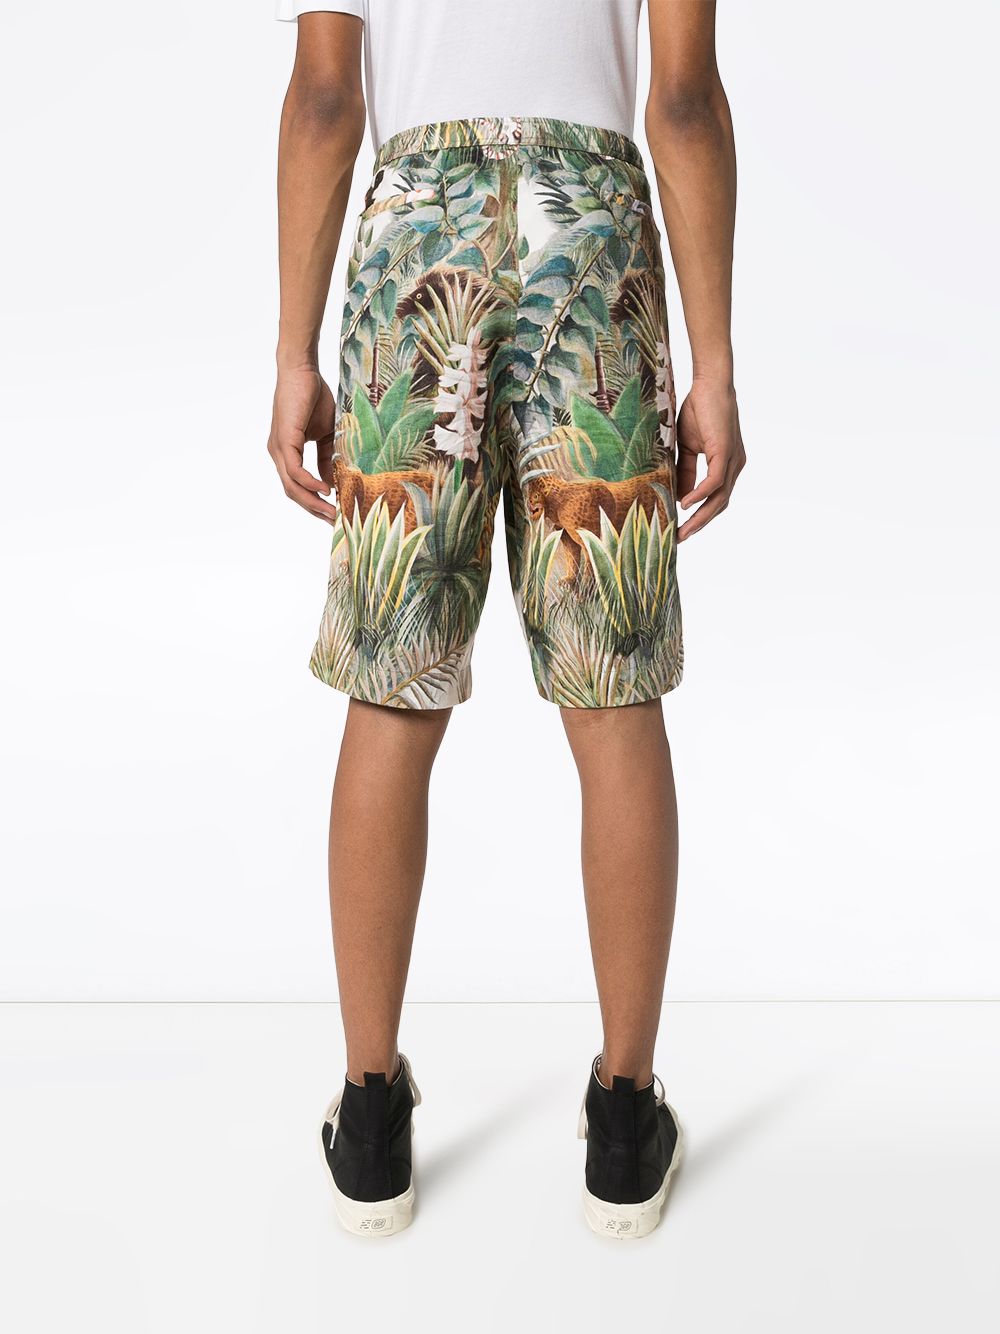 фото Endless joy шорты equatorial jungle с принтом